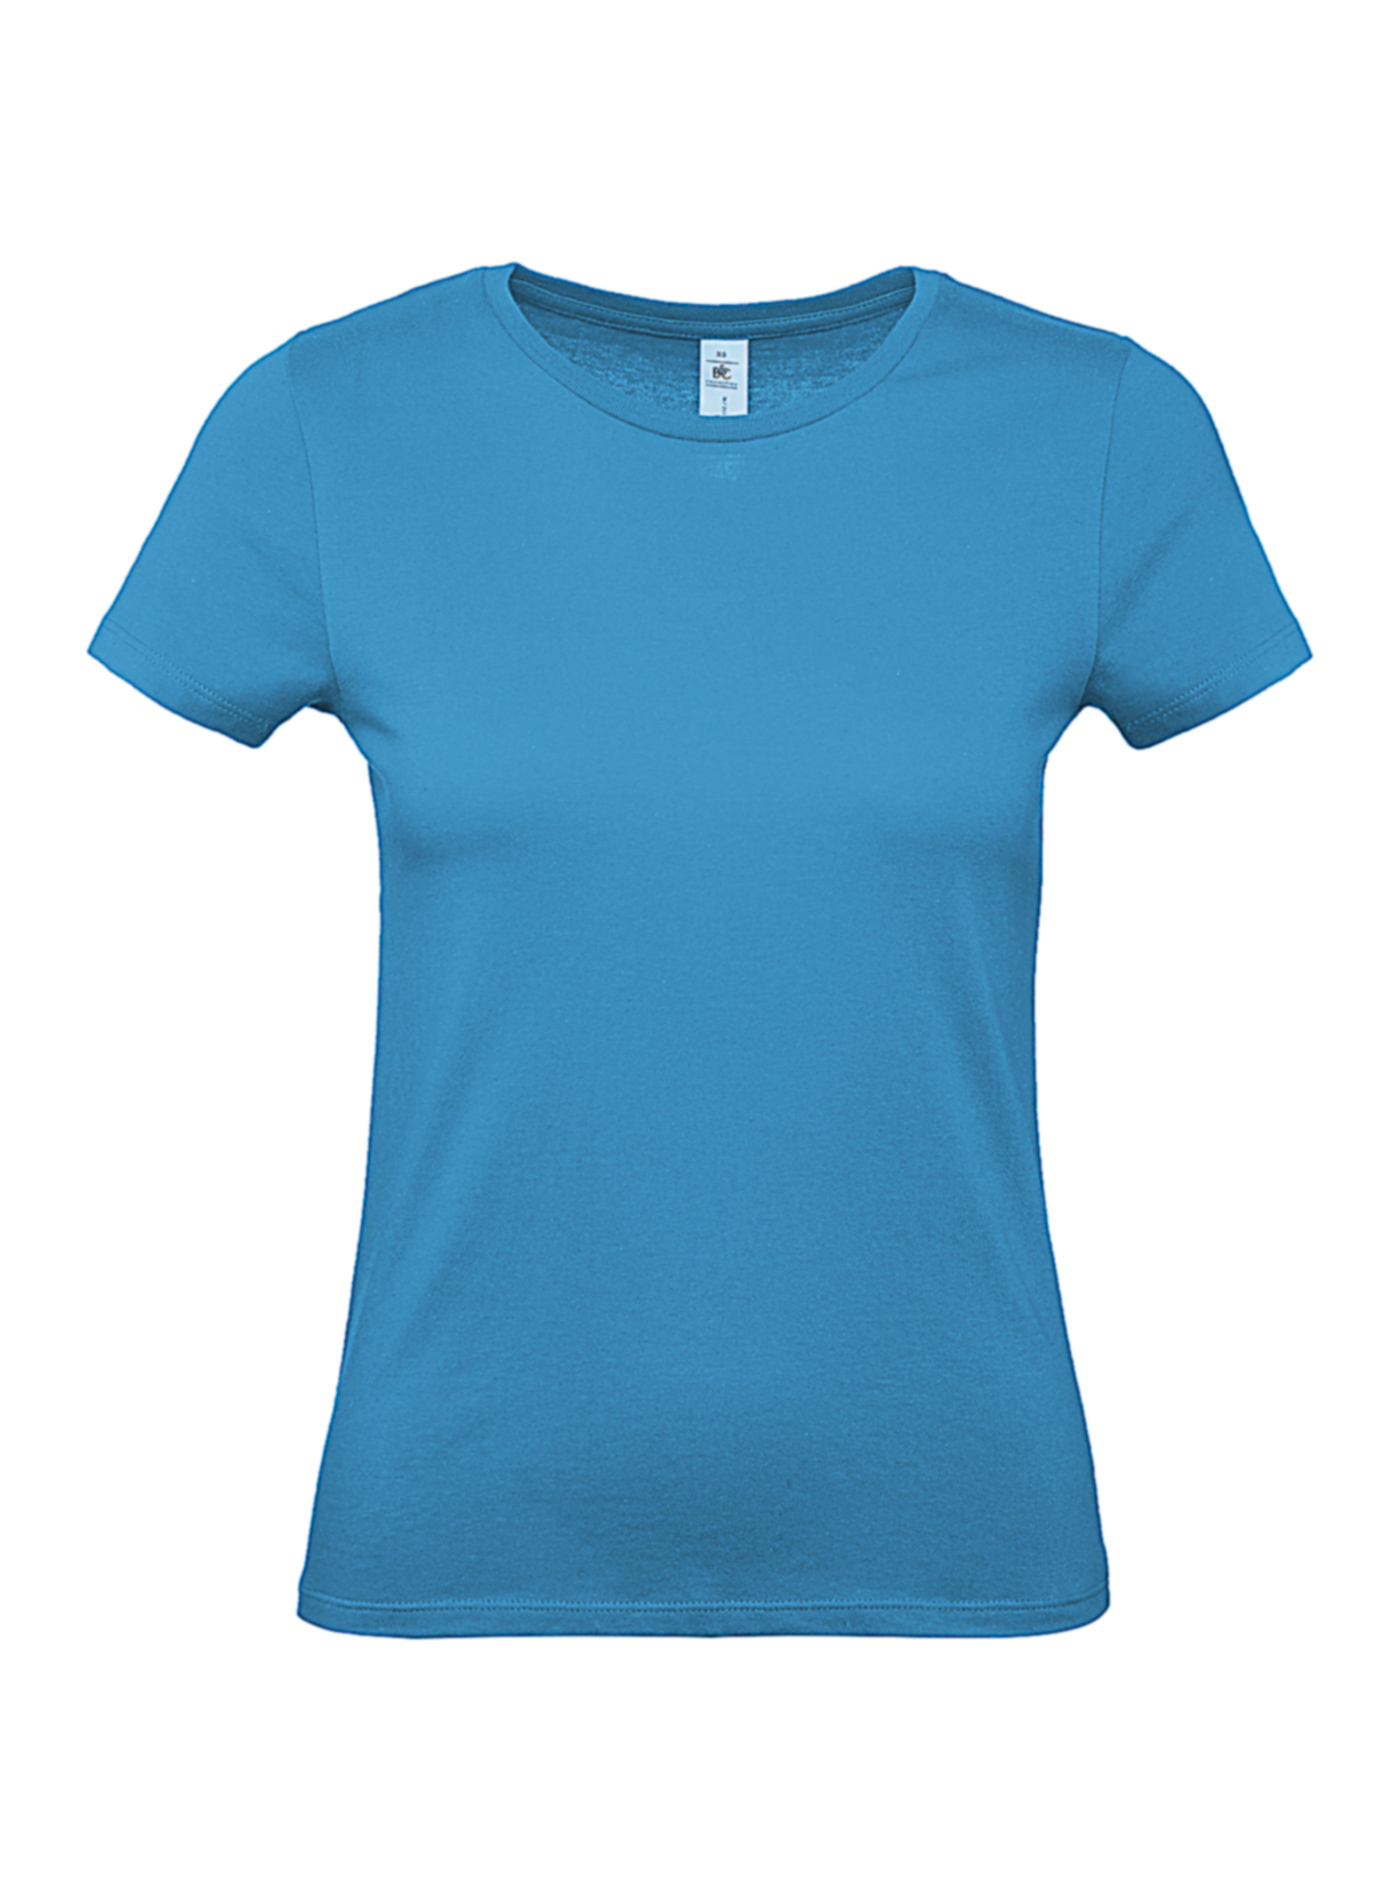 Dámské tričko B&C - Blankytně modrá M